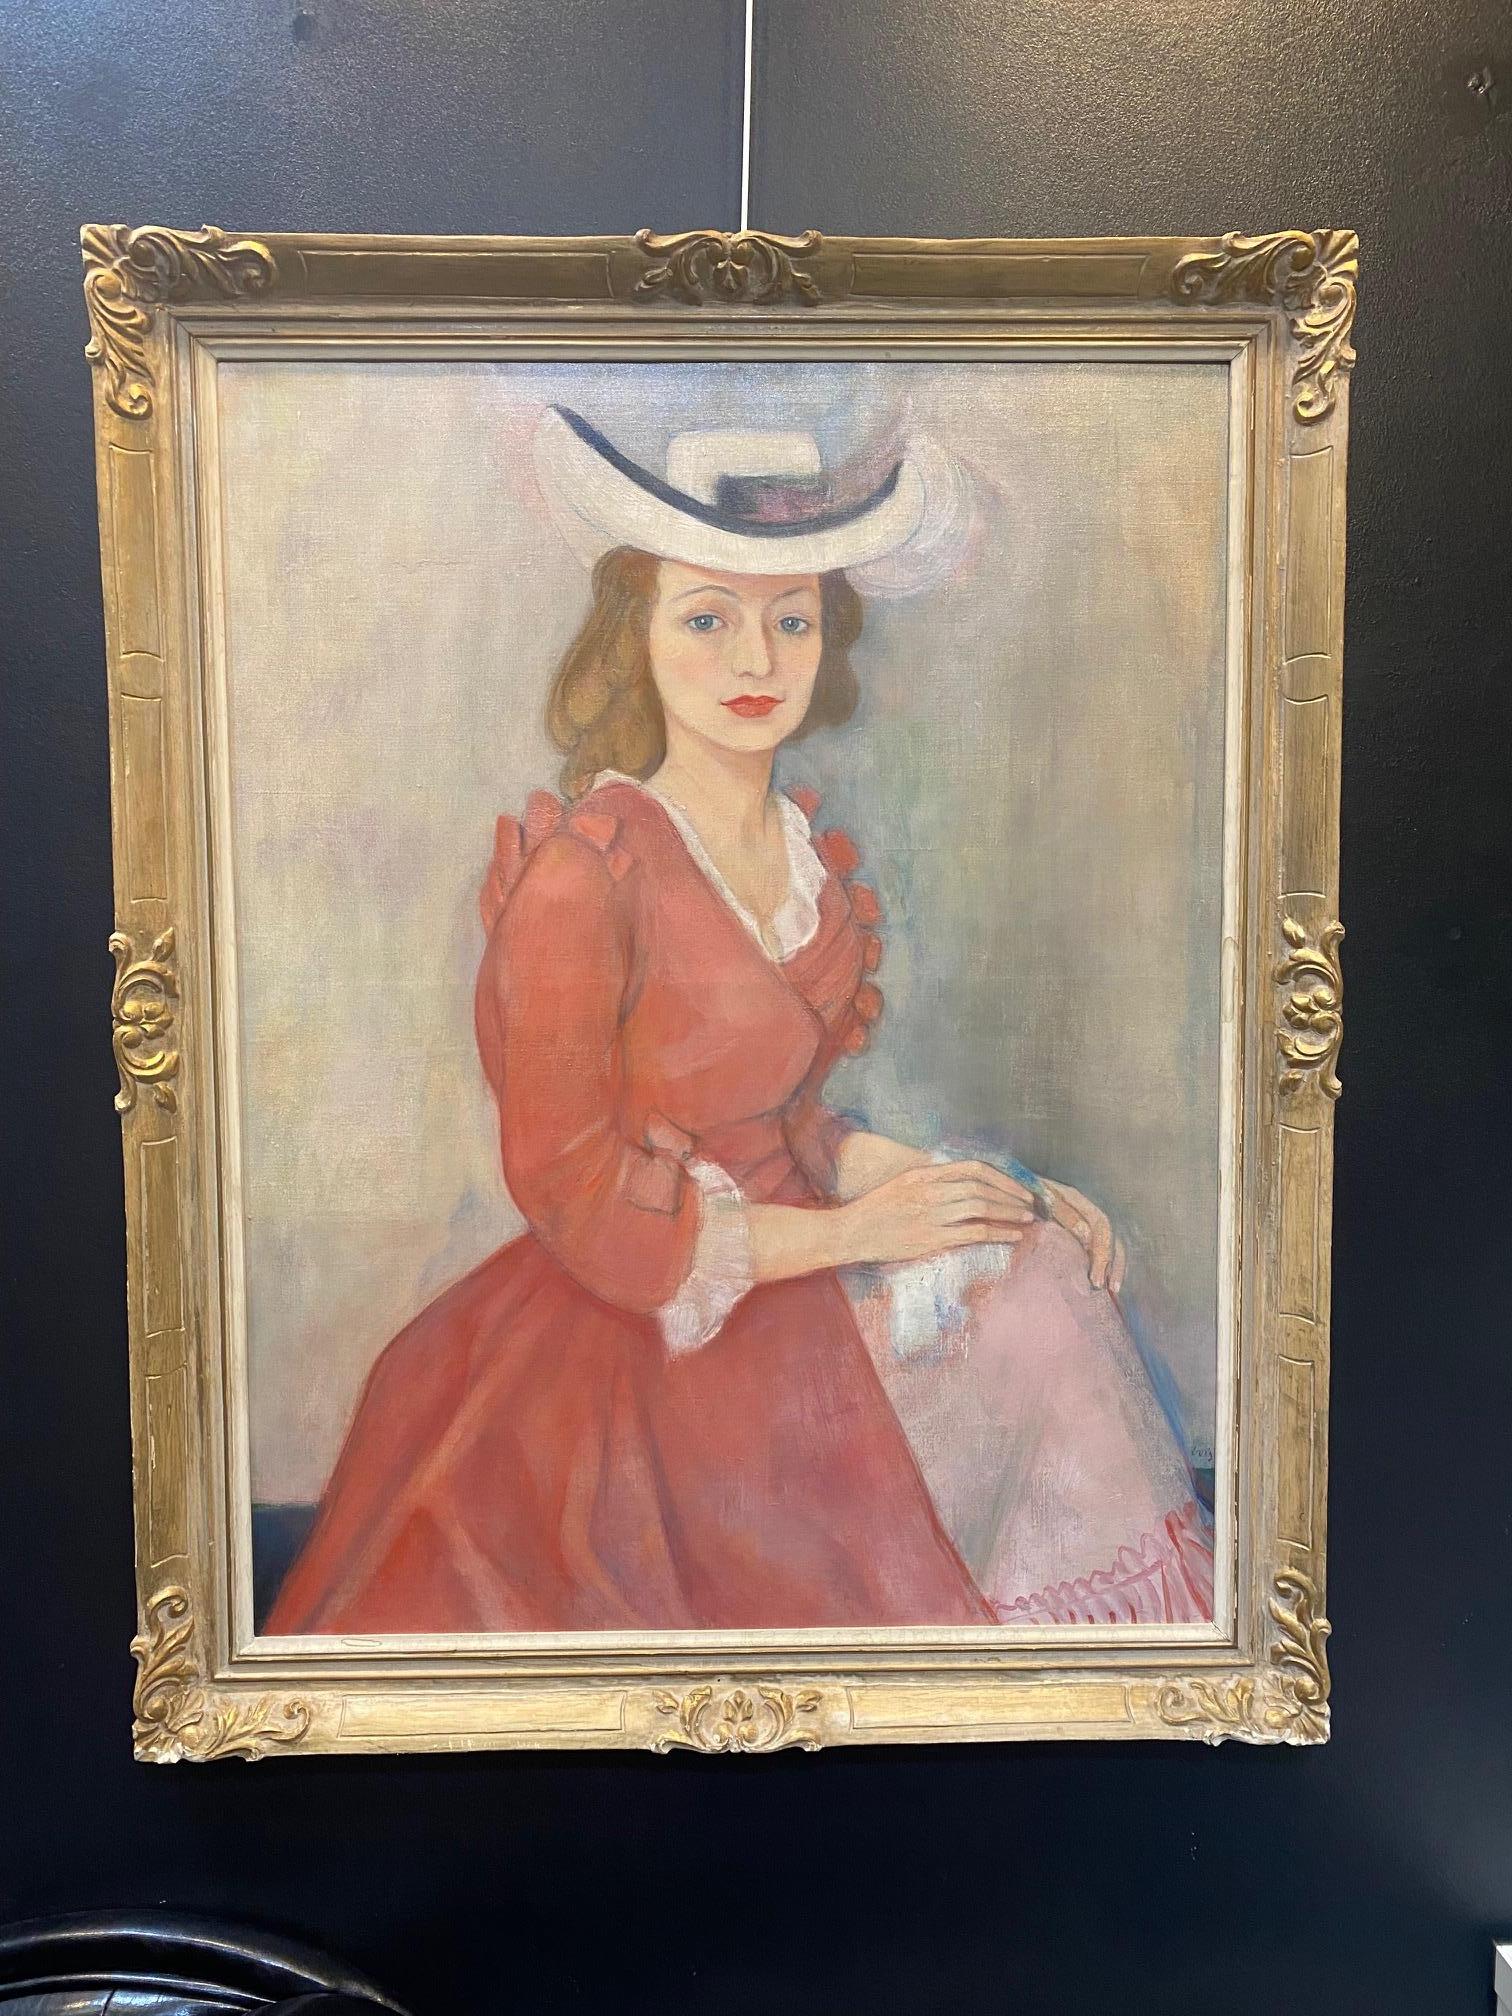 Woman portrait by Ilse Voigt - Oil on canvas 96x76 cm For Sale 1